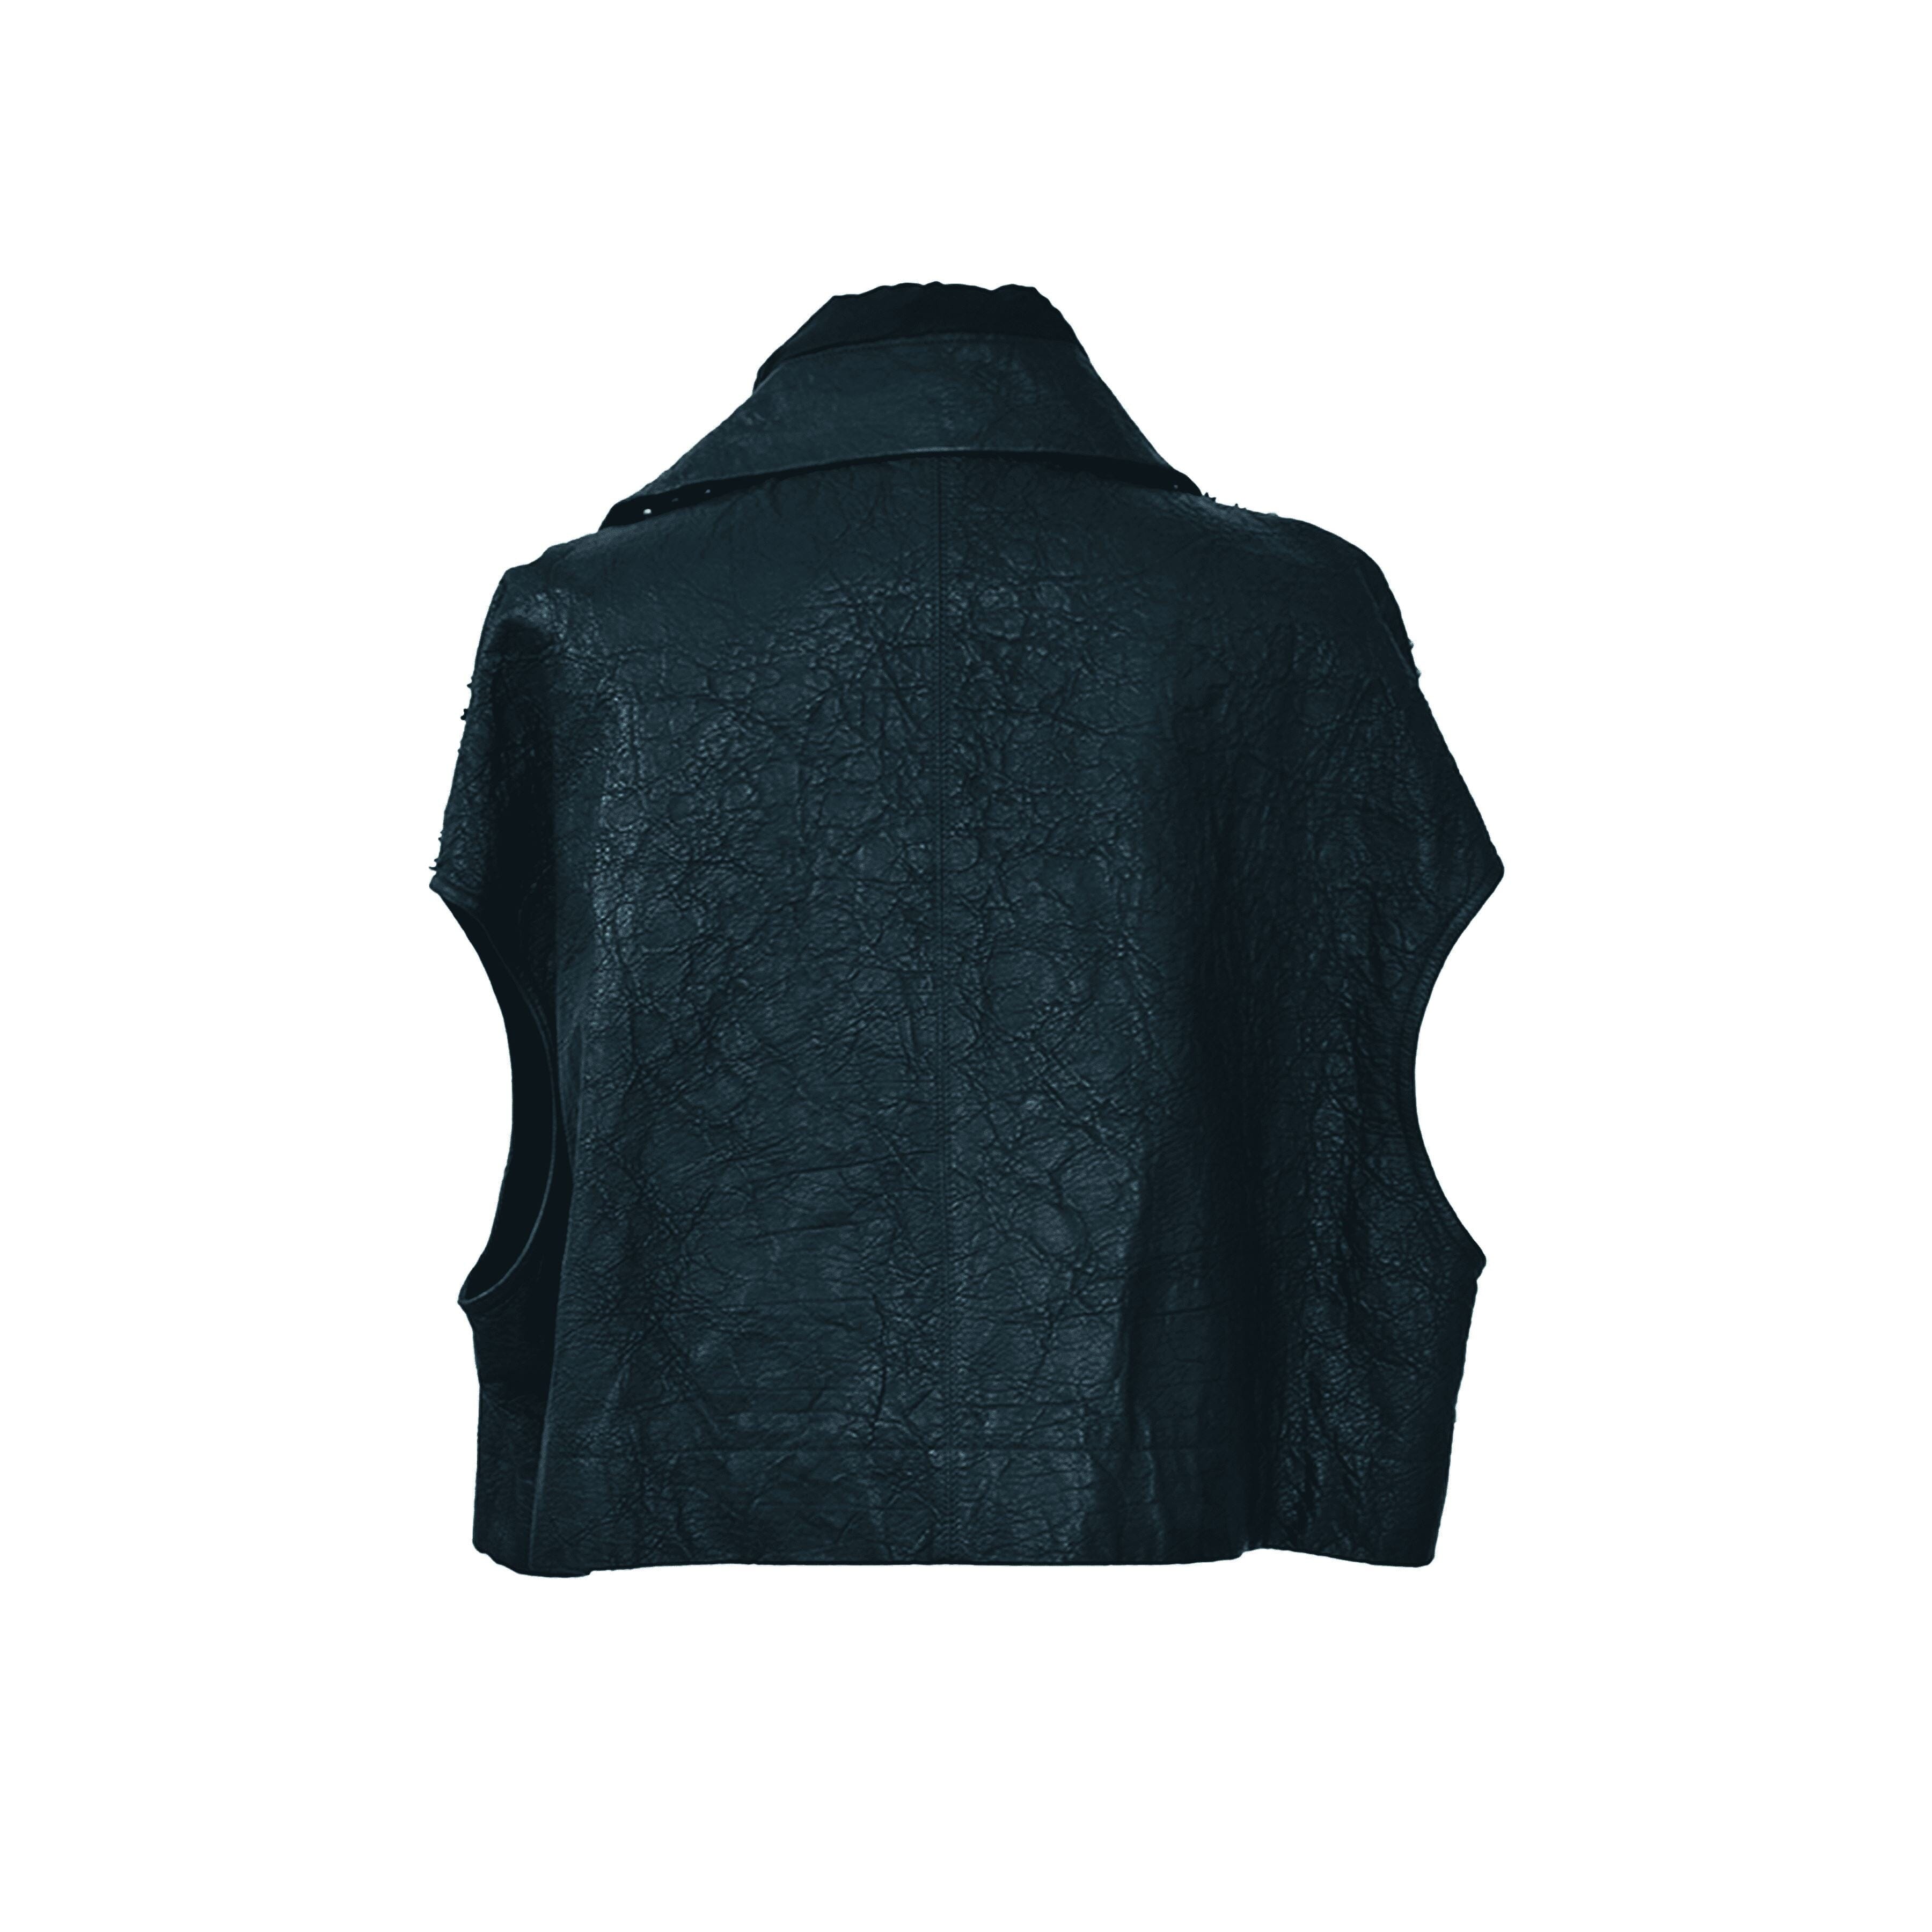 Black Studded Sleeveless Jacket Clothing Rick Owens 